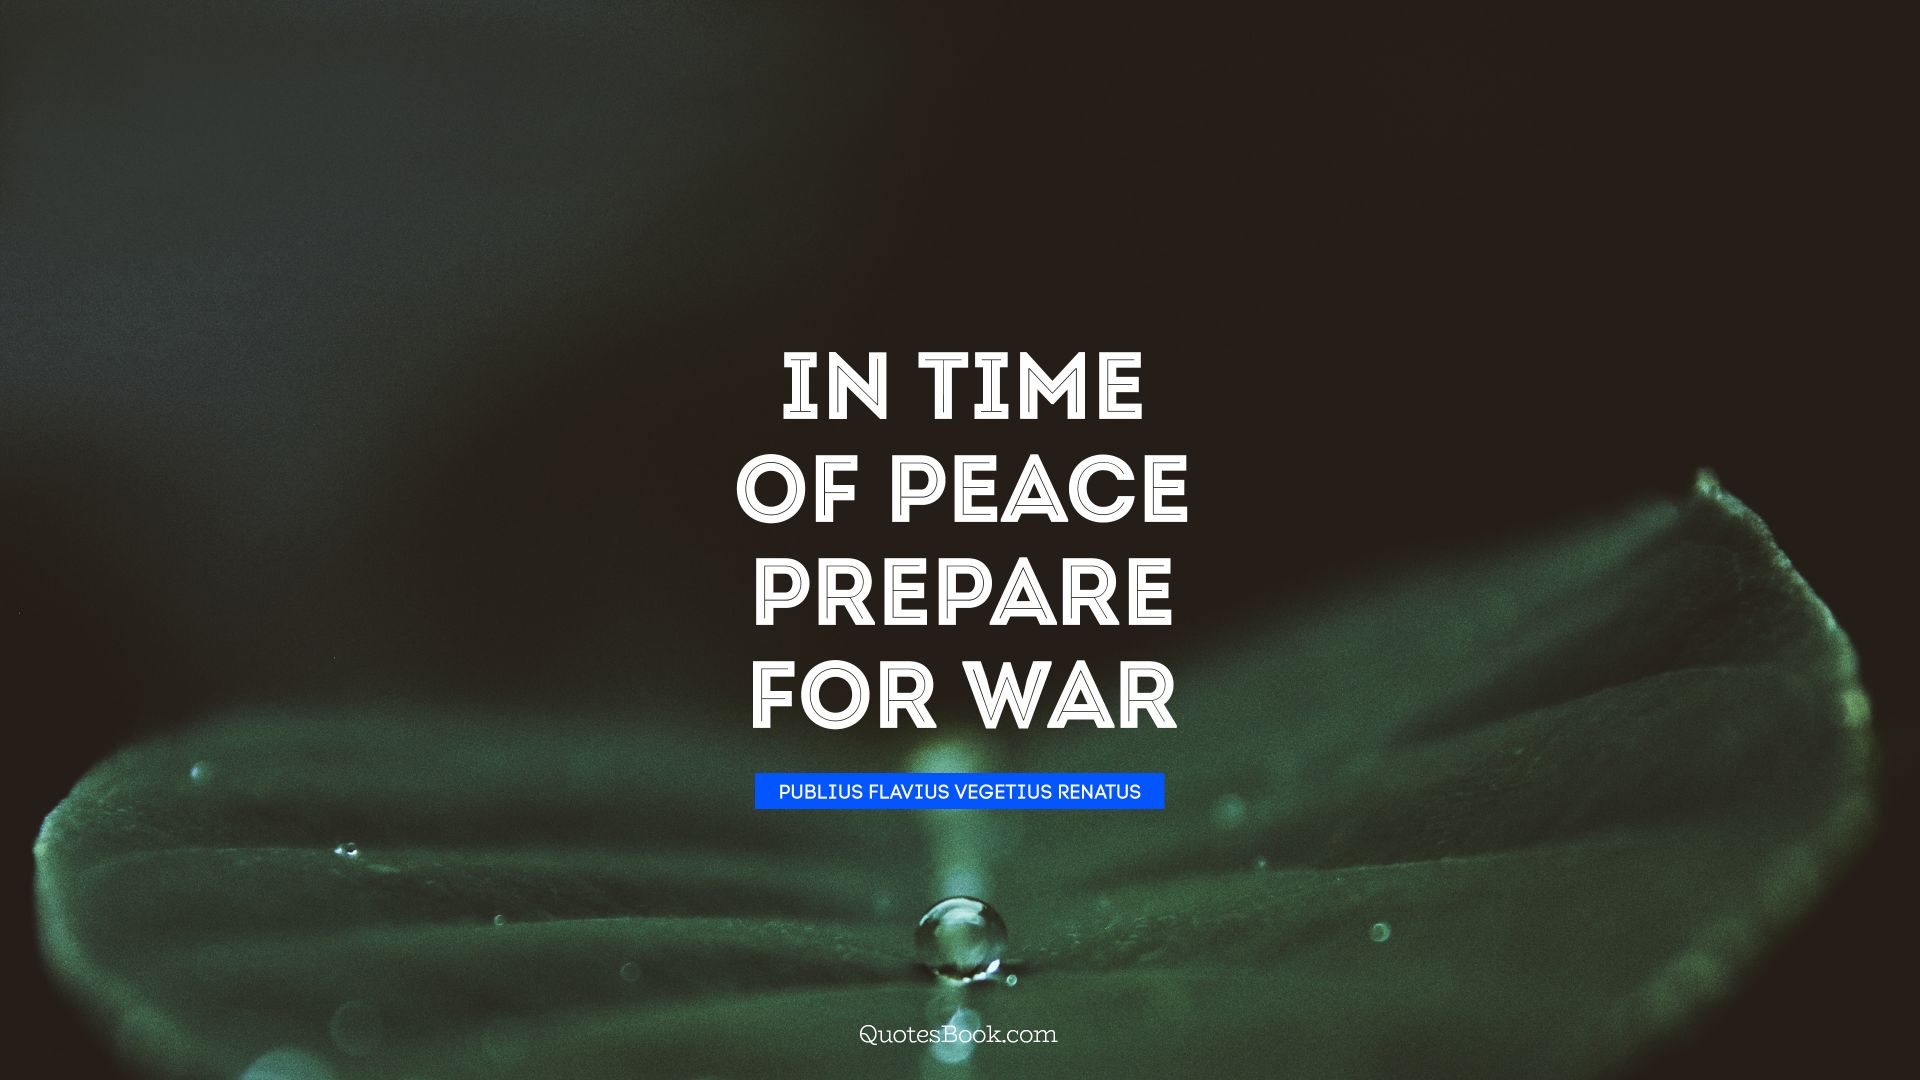 In time of peace prepare for war. - Quote by Publius Flavius Vegetius Renatus